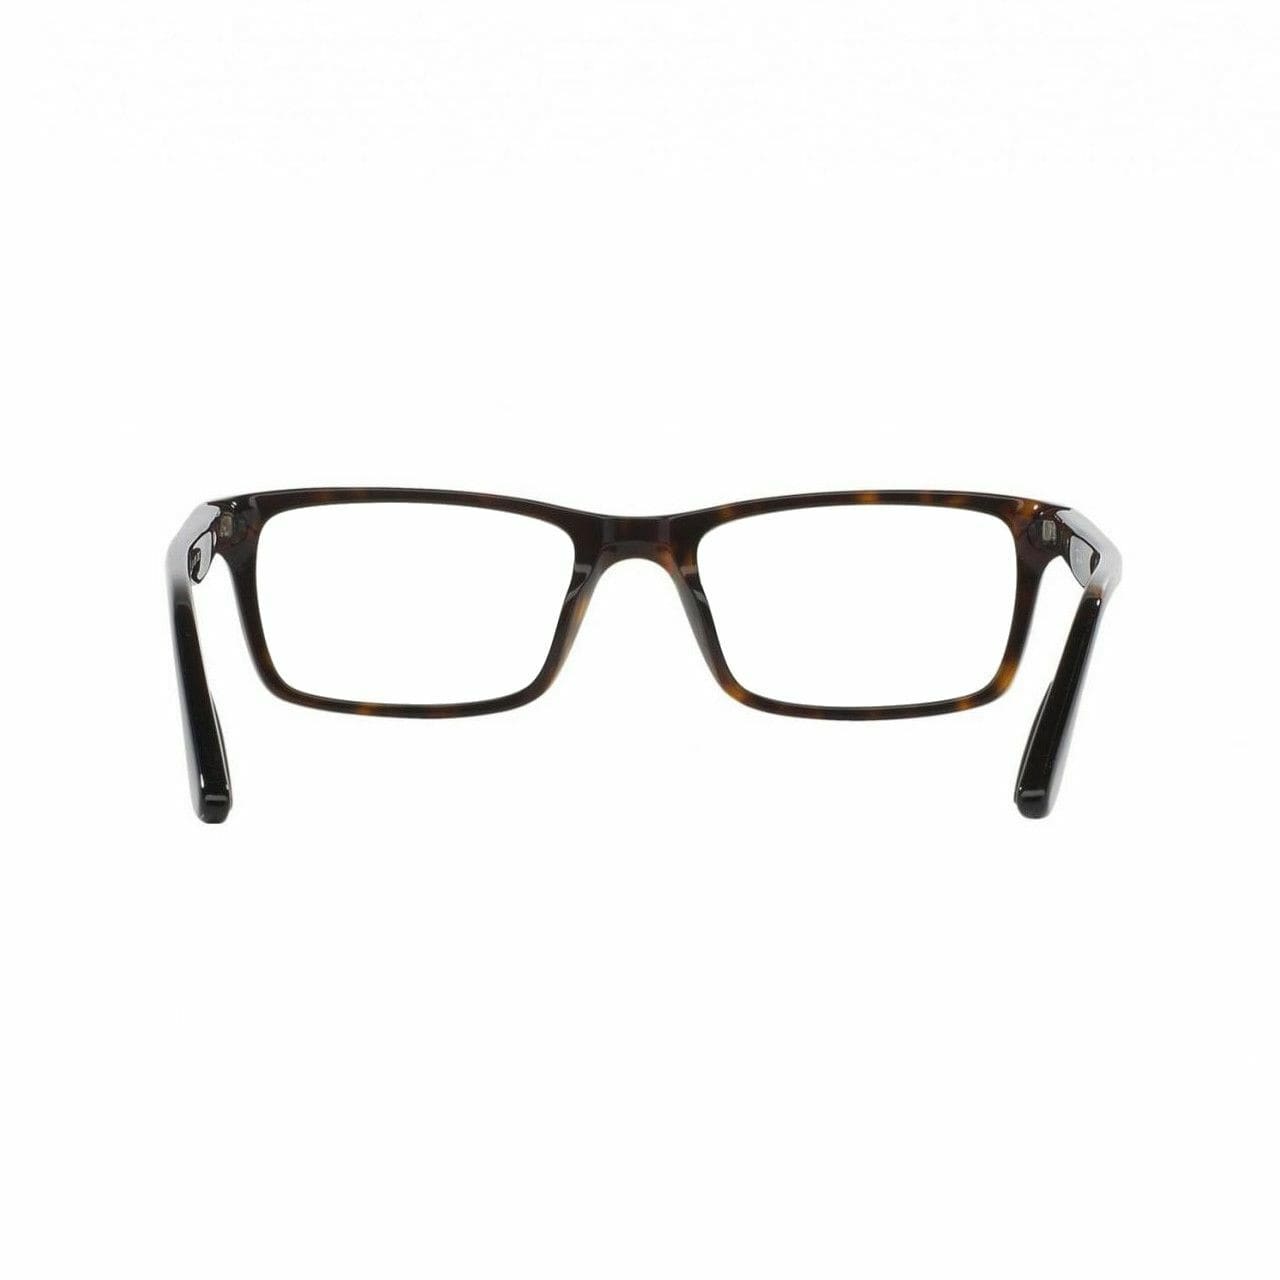 Ray-Ban RB5288-2012 Tortoise Rectangular Unisex Plastic Eyeglasses 8053672005431